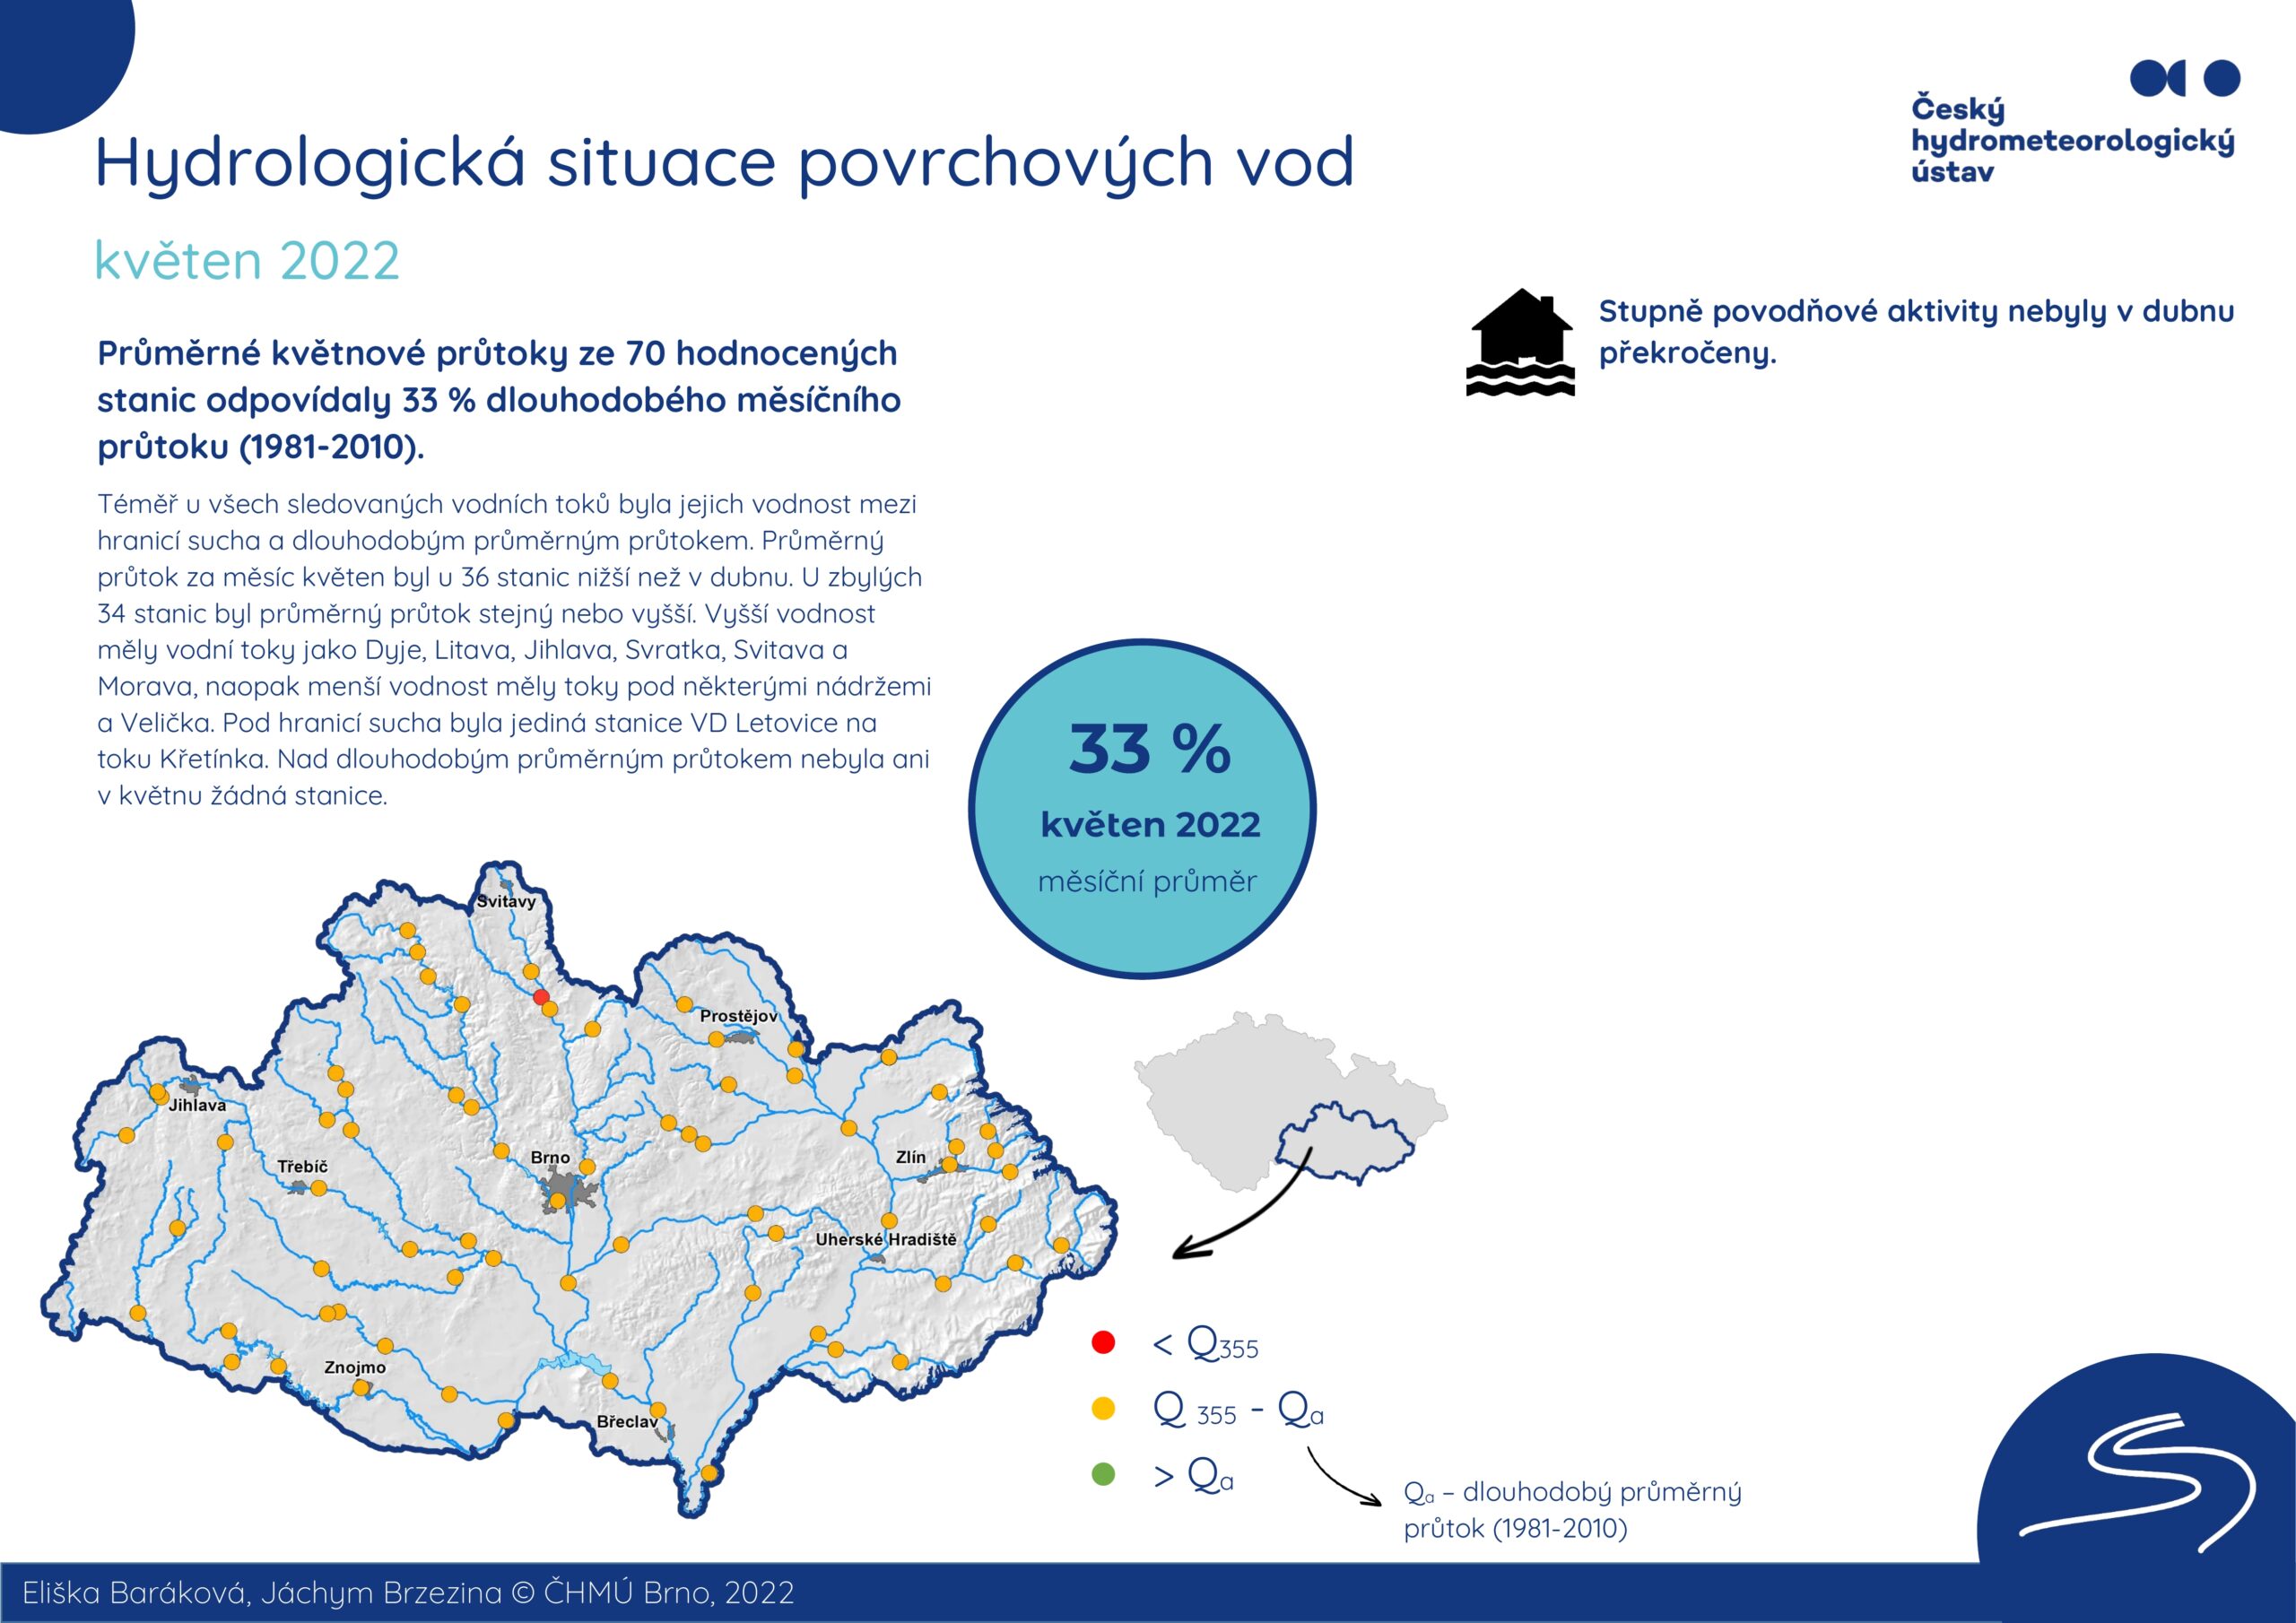 Hydrologická situace povrchových vod na pobočce Brno – květen 20221 min čtení